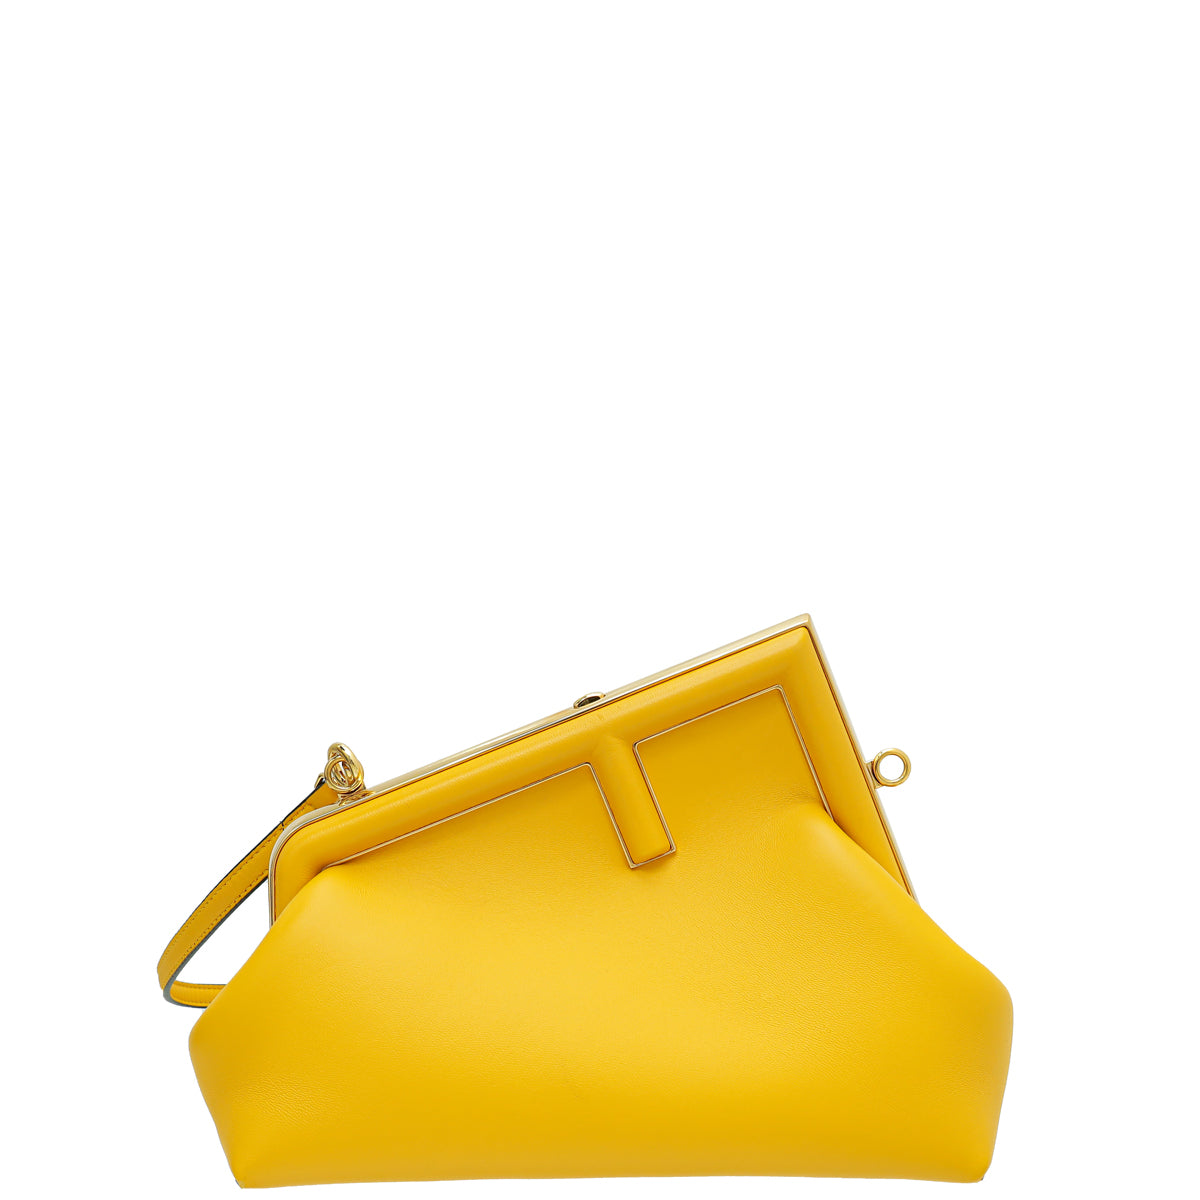 Fendi Yellow "Fendi First" Small Bag